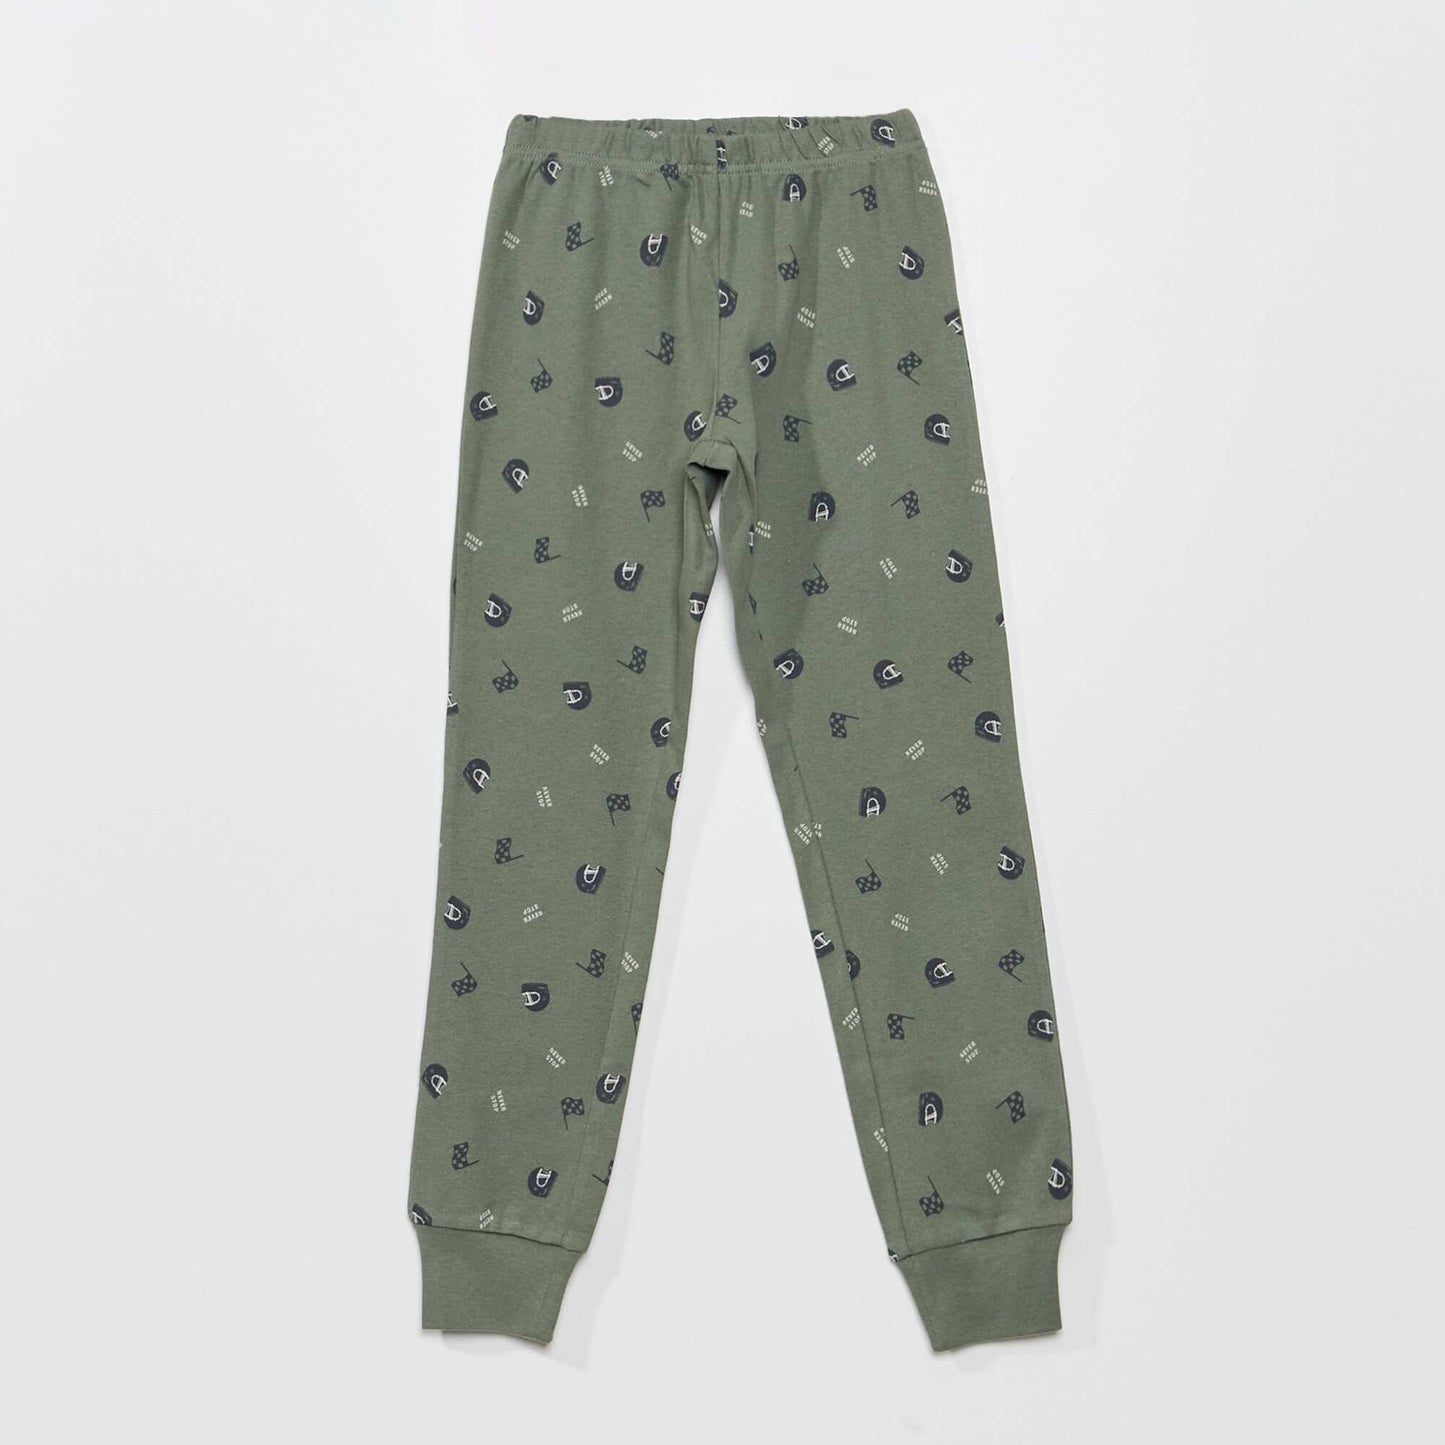 Pyjama en jersey fantaisie - 2 pièces Vert